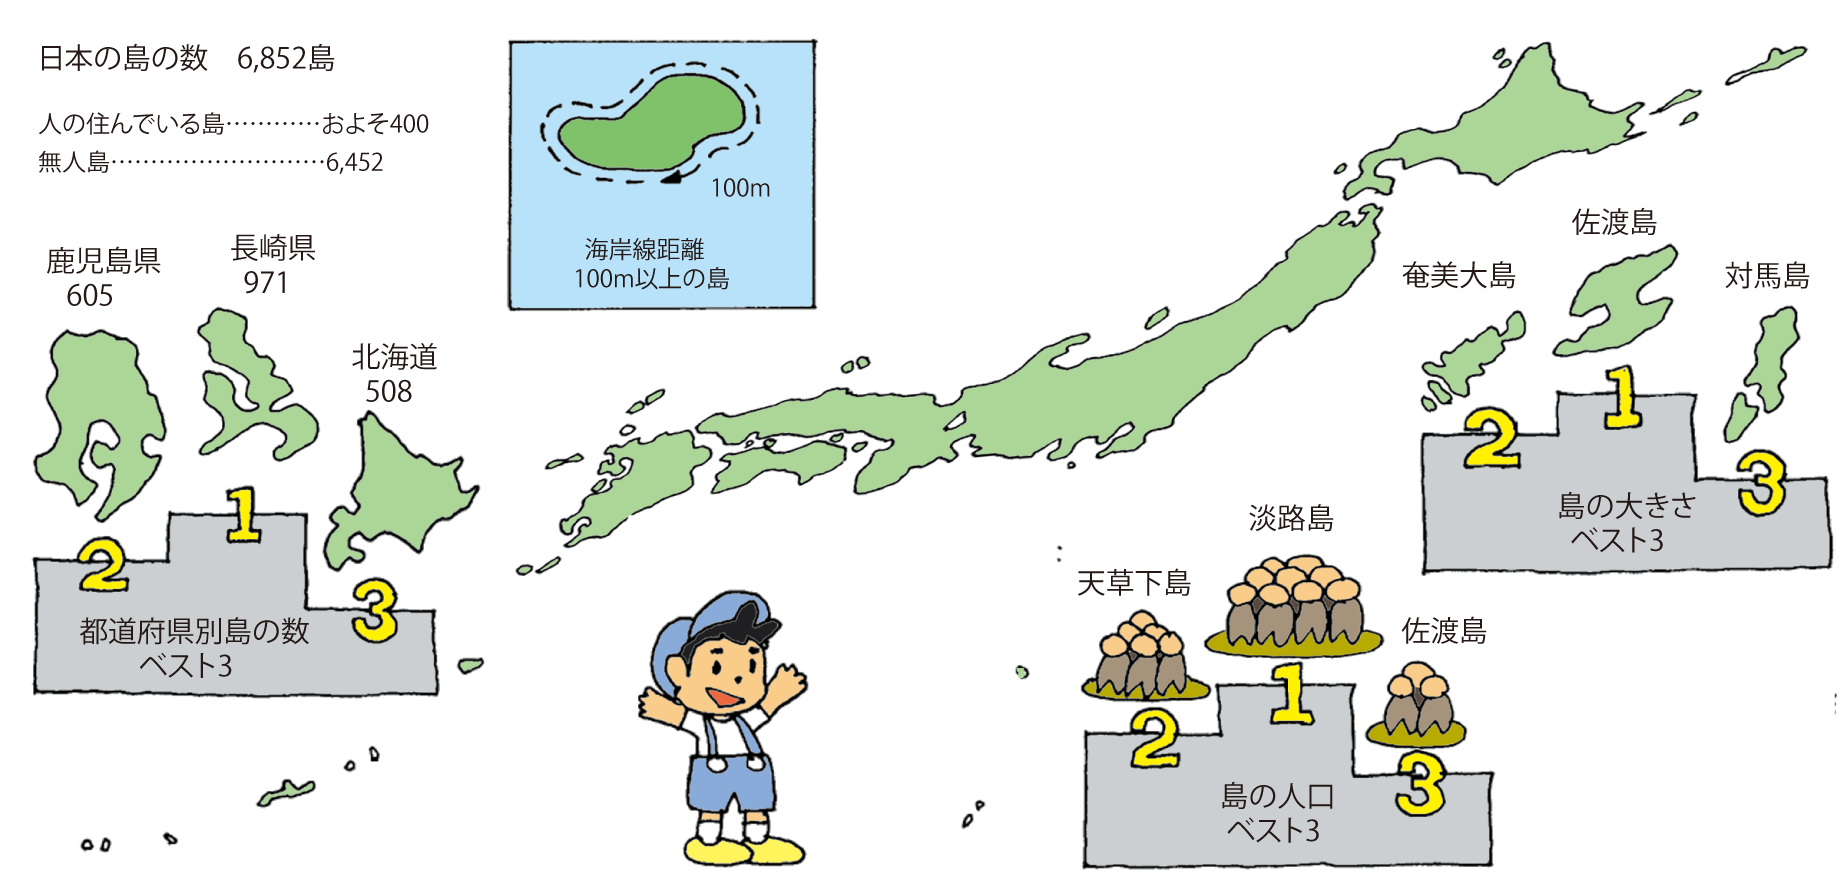 日本の島の数 海の自然のなるほど 海と船なるほど豆事典 日本海事広報協会